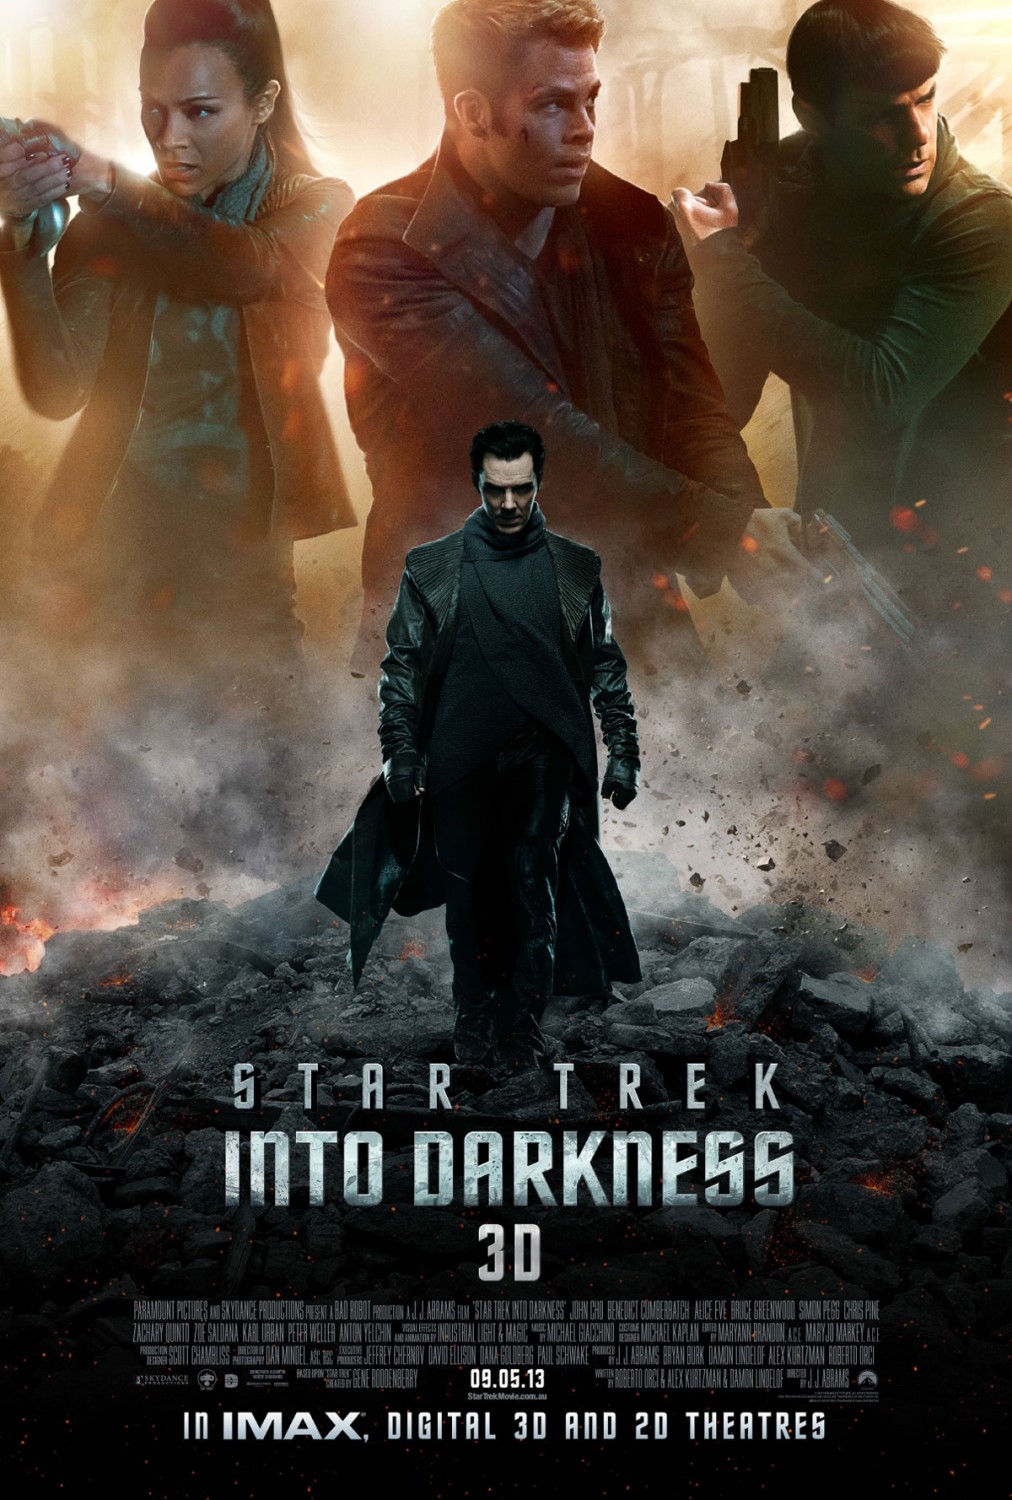 Star Trek: Into Darkness sci-fi movies on Netflix